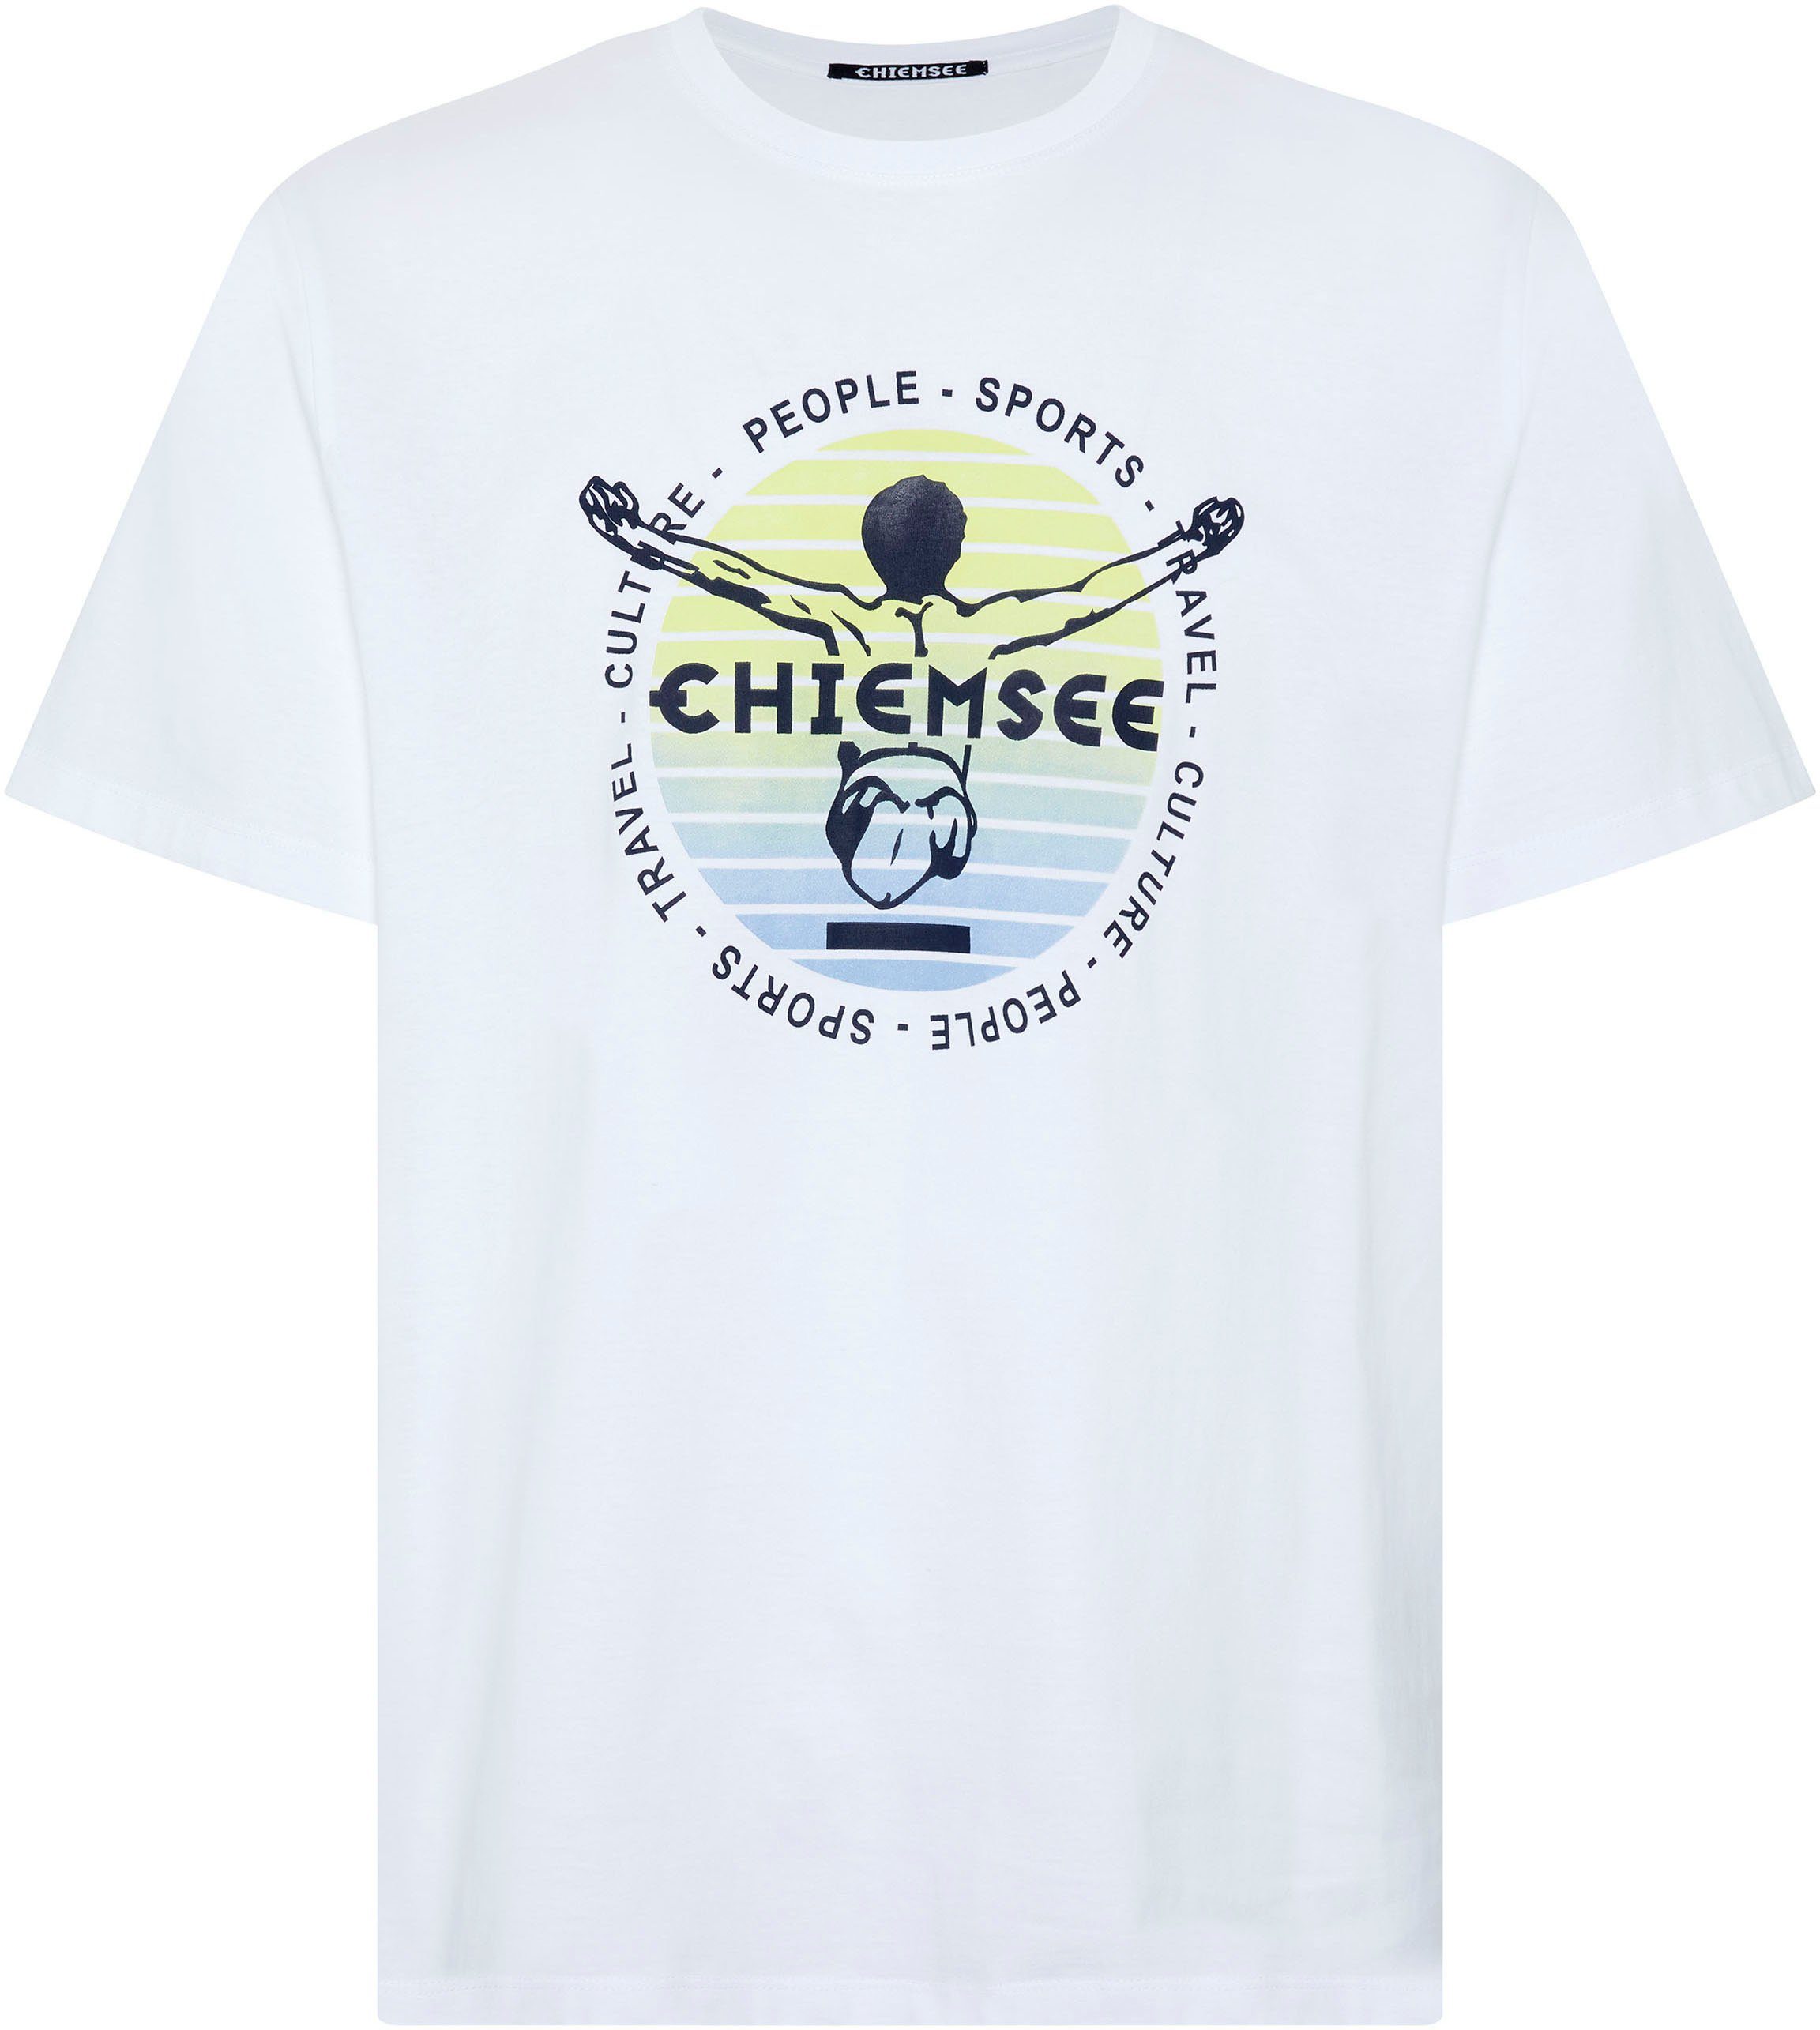 Chiemsee T-Shirt White Star